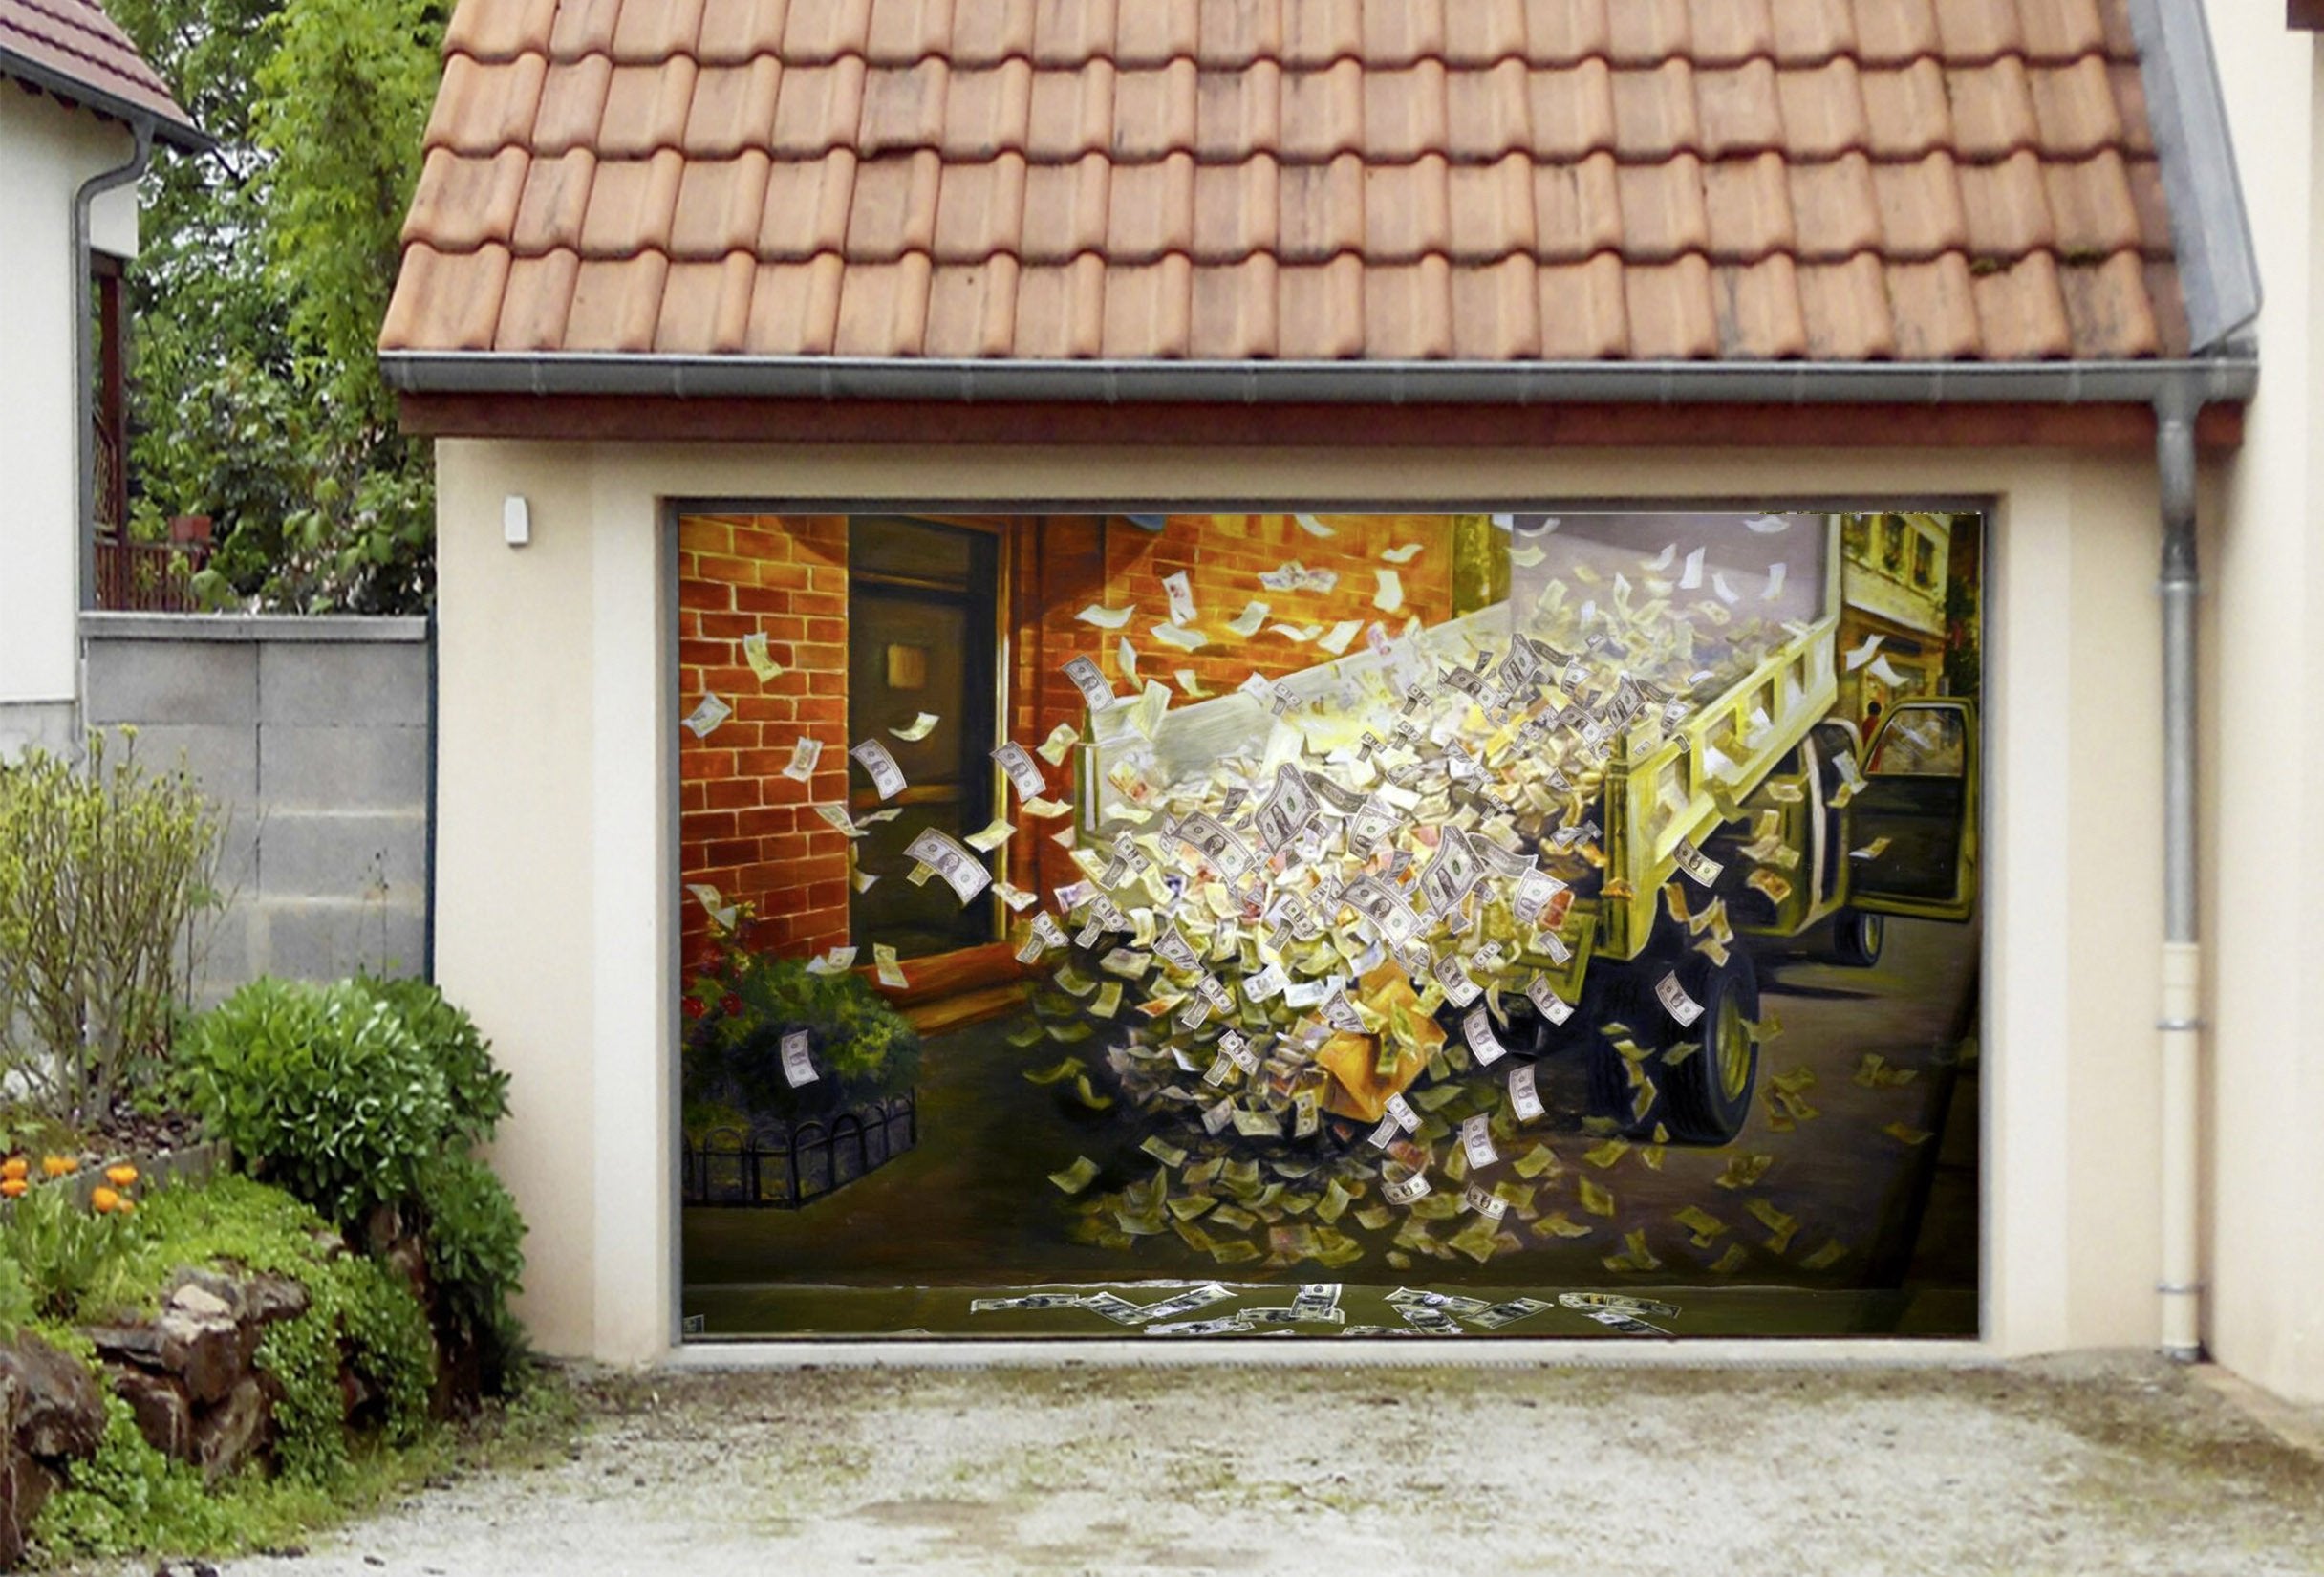 3D Truck Flying Money 303 Garage Door Mural Wallpaper AJ Wallpaper 